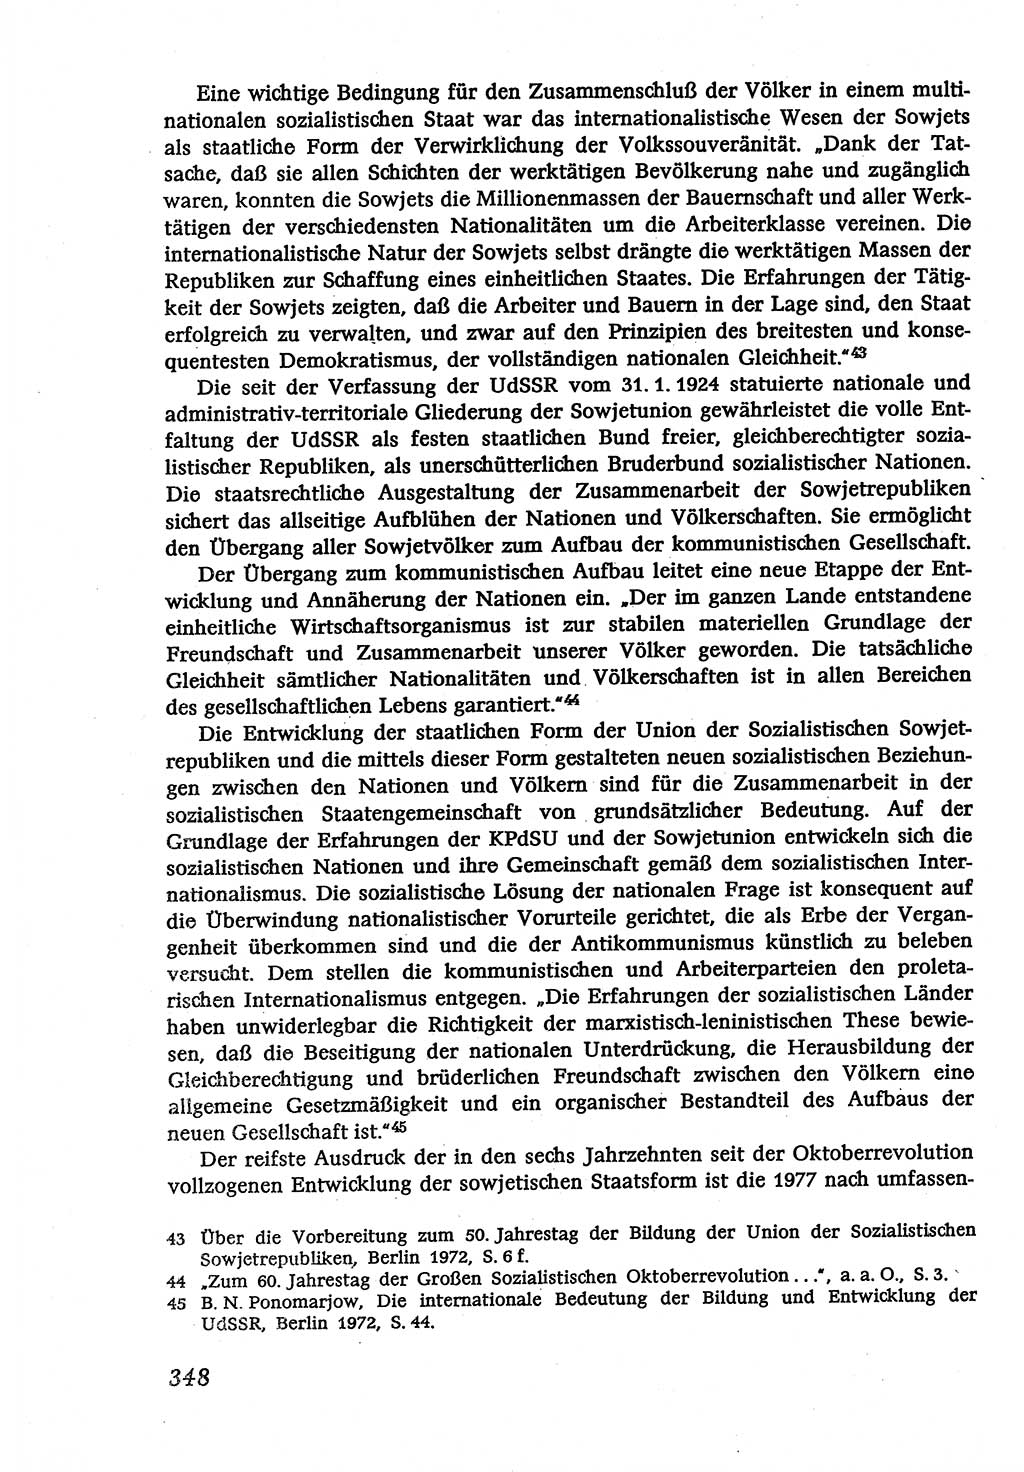 Marxistisch-leninistische (ML) Staats- und Rechtstheorie [Deutsche Demokratische Republik (DDR)], Lehrbuch 1980, Seite 348 (ML St.-R.-Th. DDR Lb. 1980, S. 348)